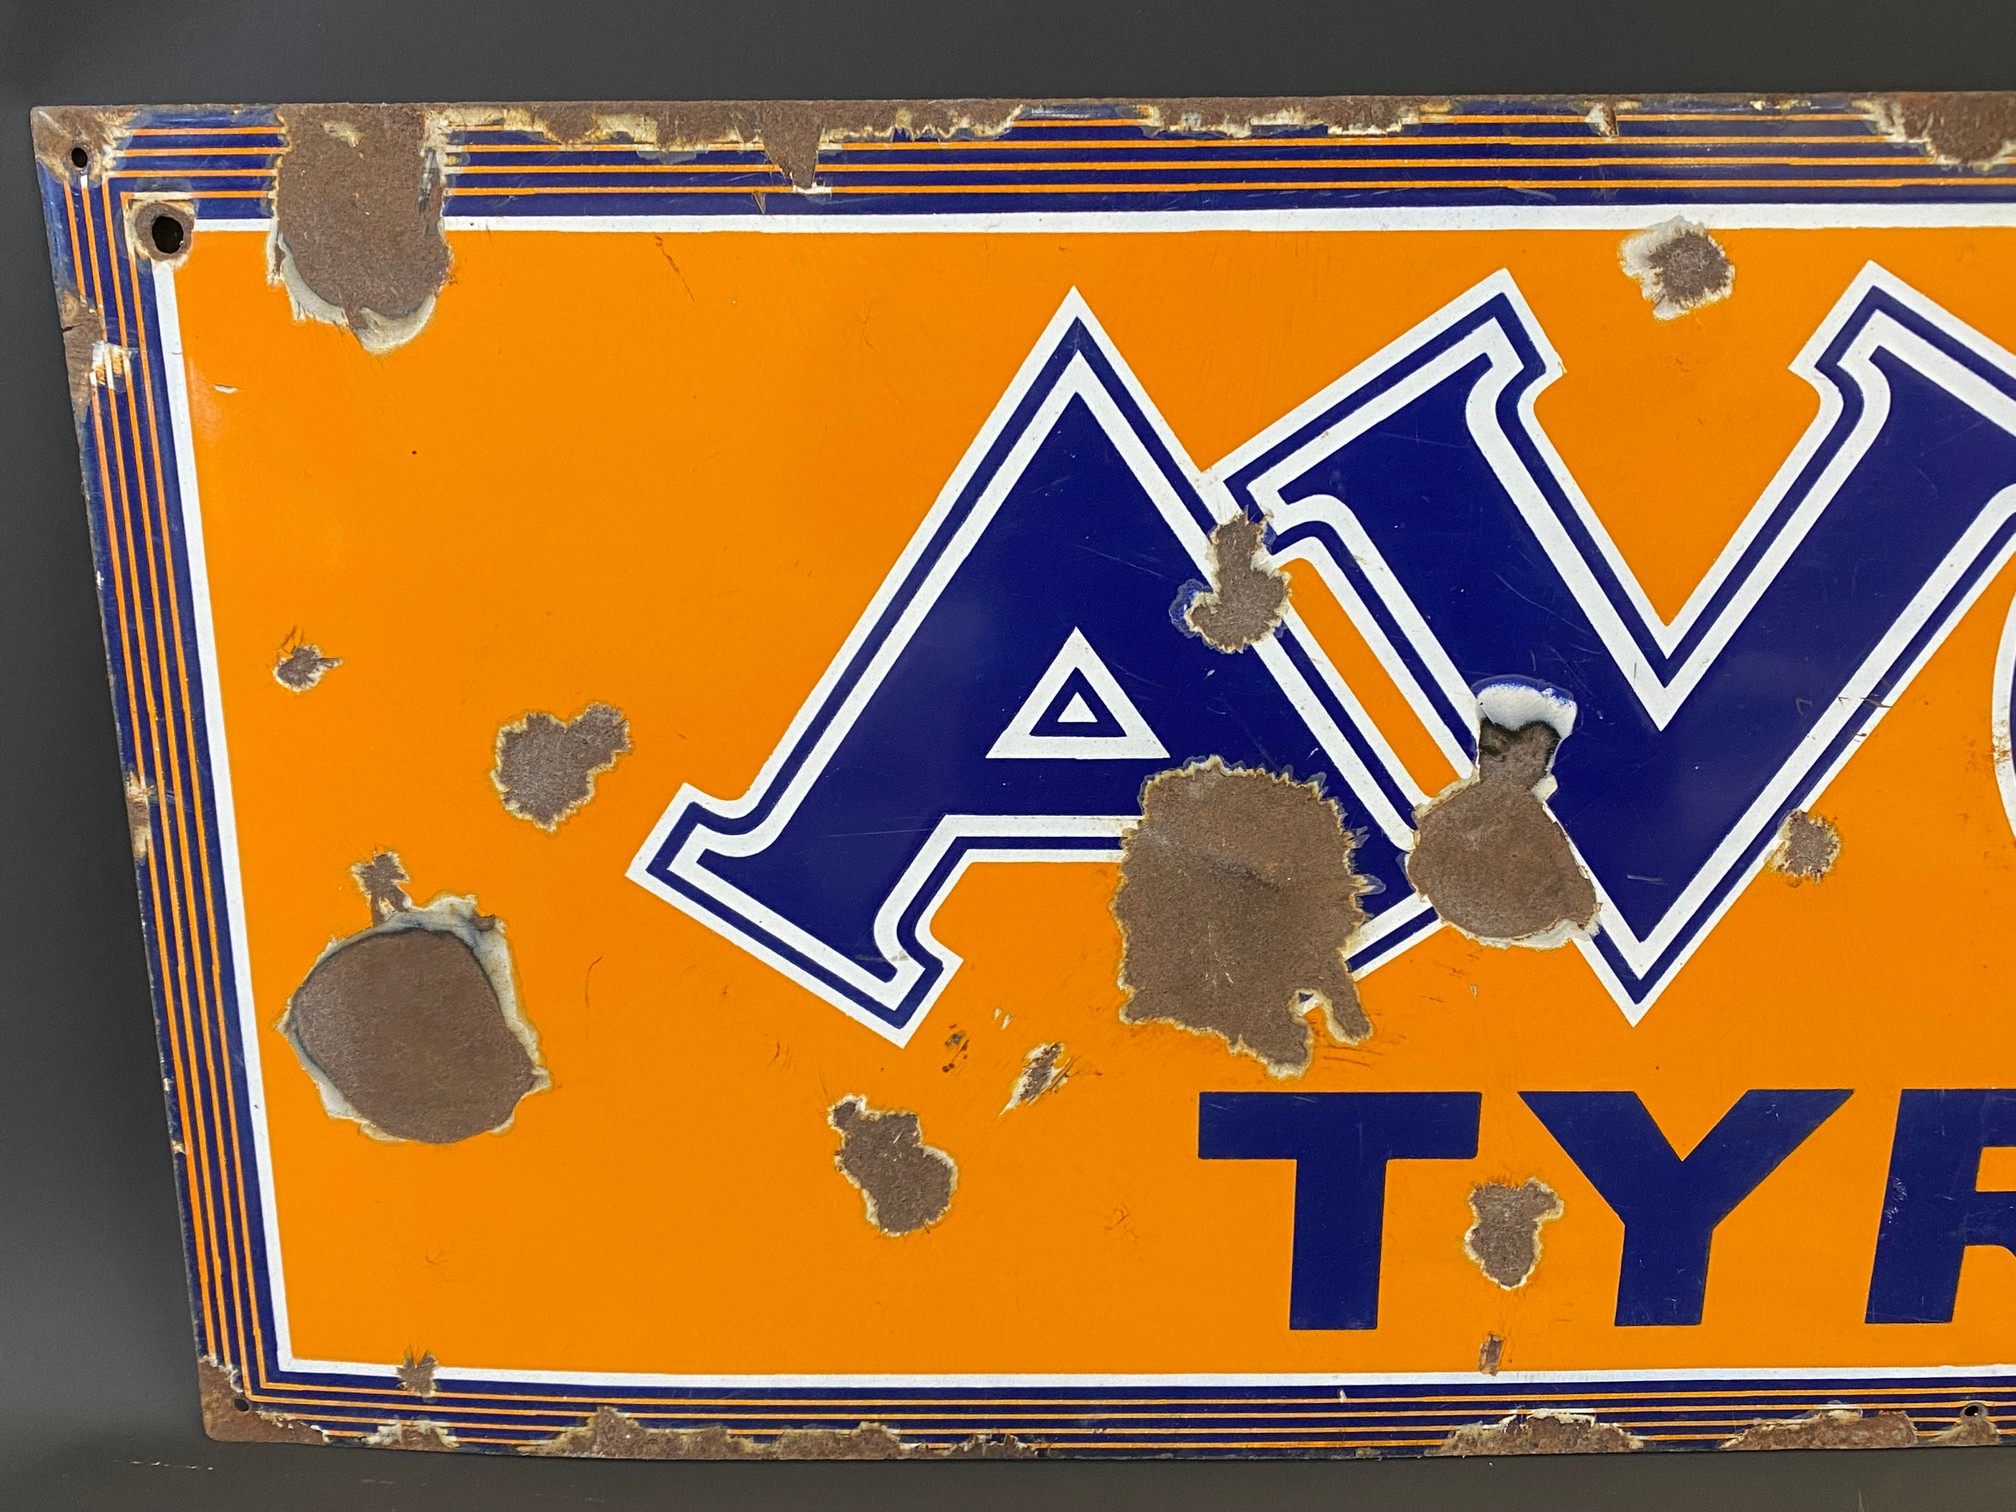 An Avon Tyres rectangular enamel sign, 41 x 15". - Image 2 of 5